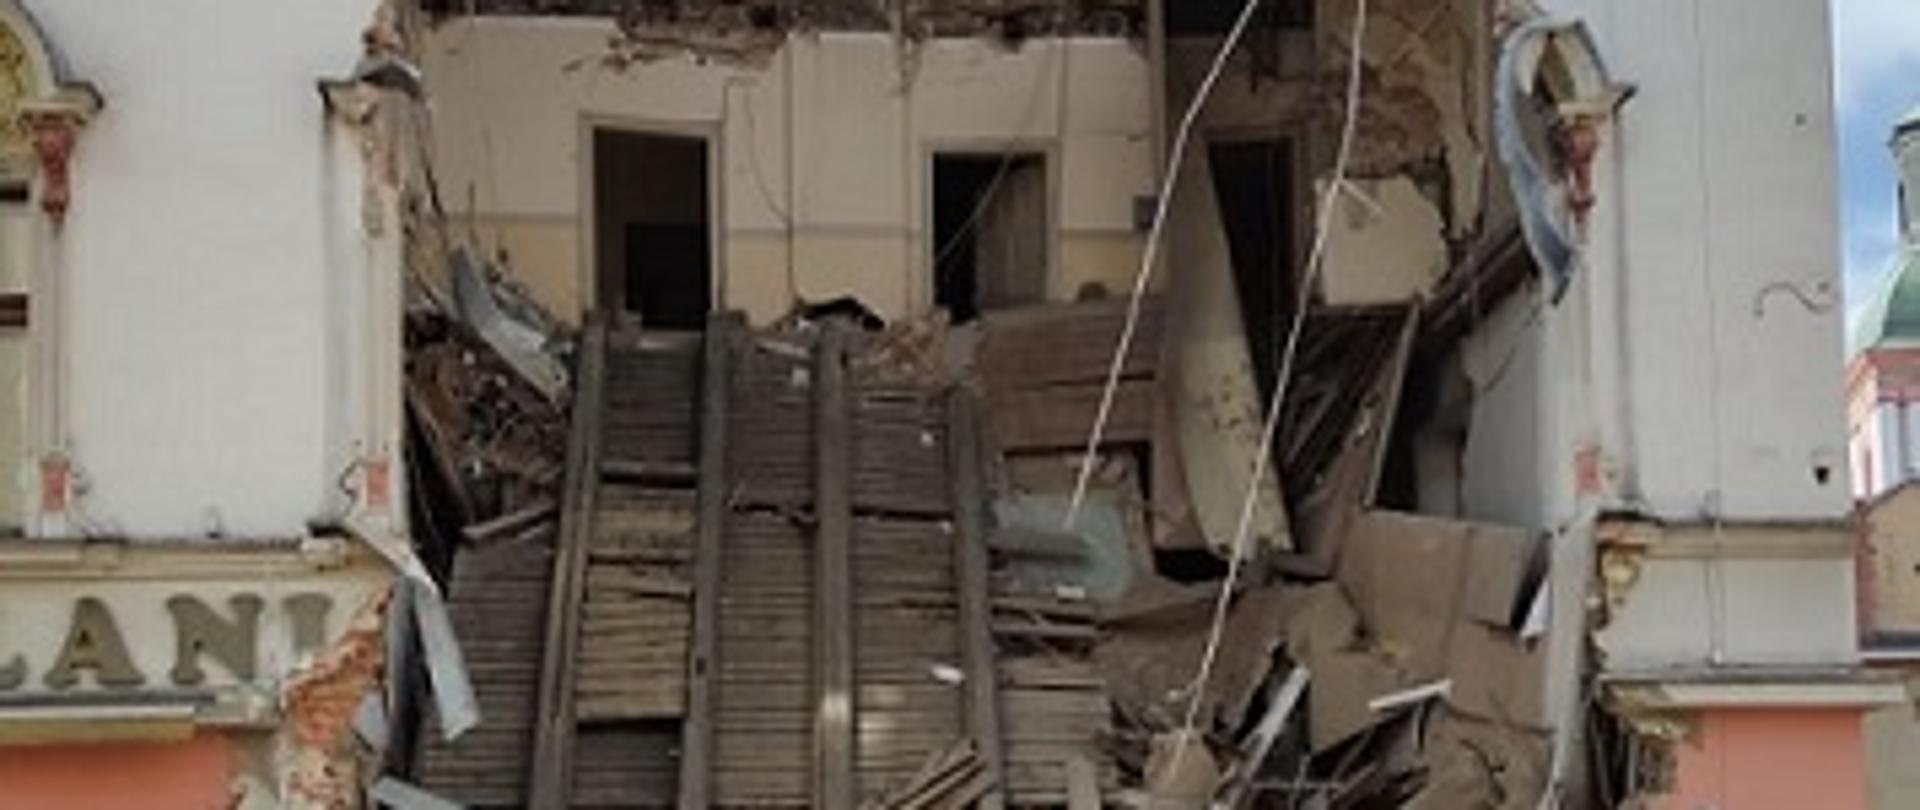 Zdjęcie przedstawia kamienicę i widoczne uszkodzenia budynku na skutek zawalenie się części ściany frontowej i stropów w budynku.